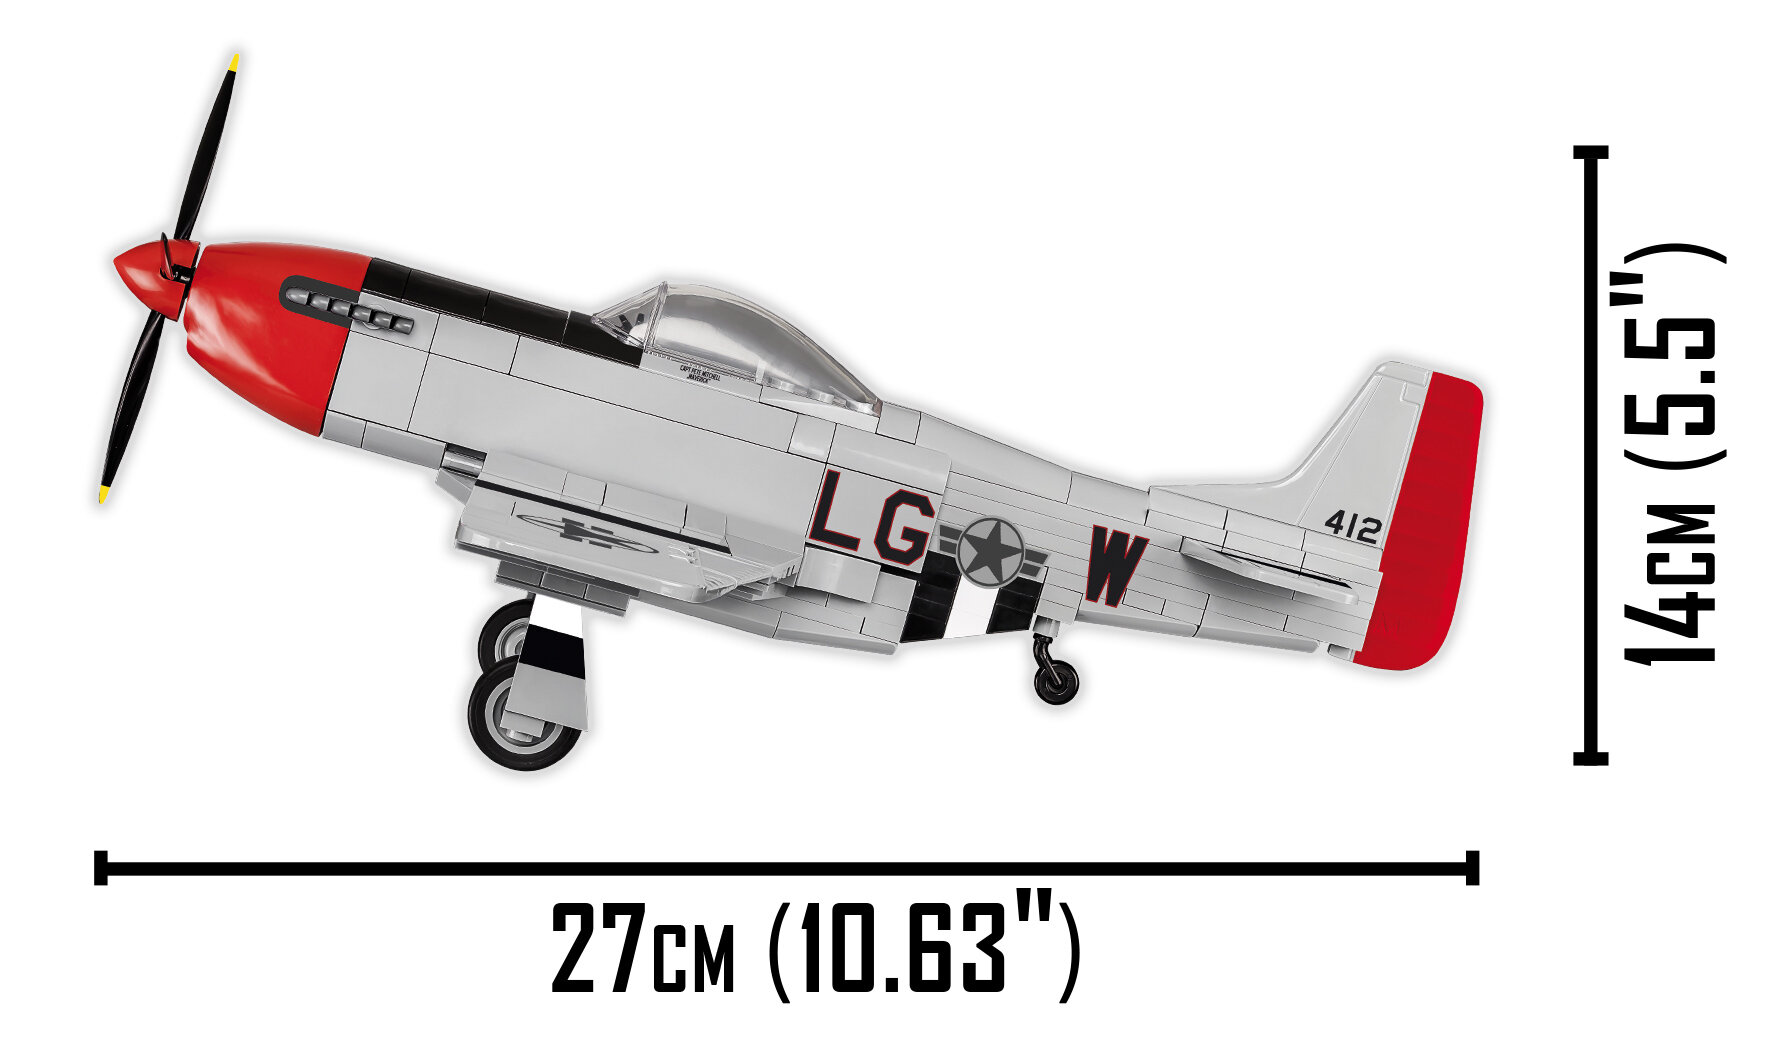 Cobi 5543 Me262a/Warplane/Avionics/Warfighter/Warplane/Bricks 